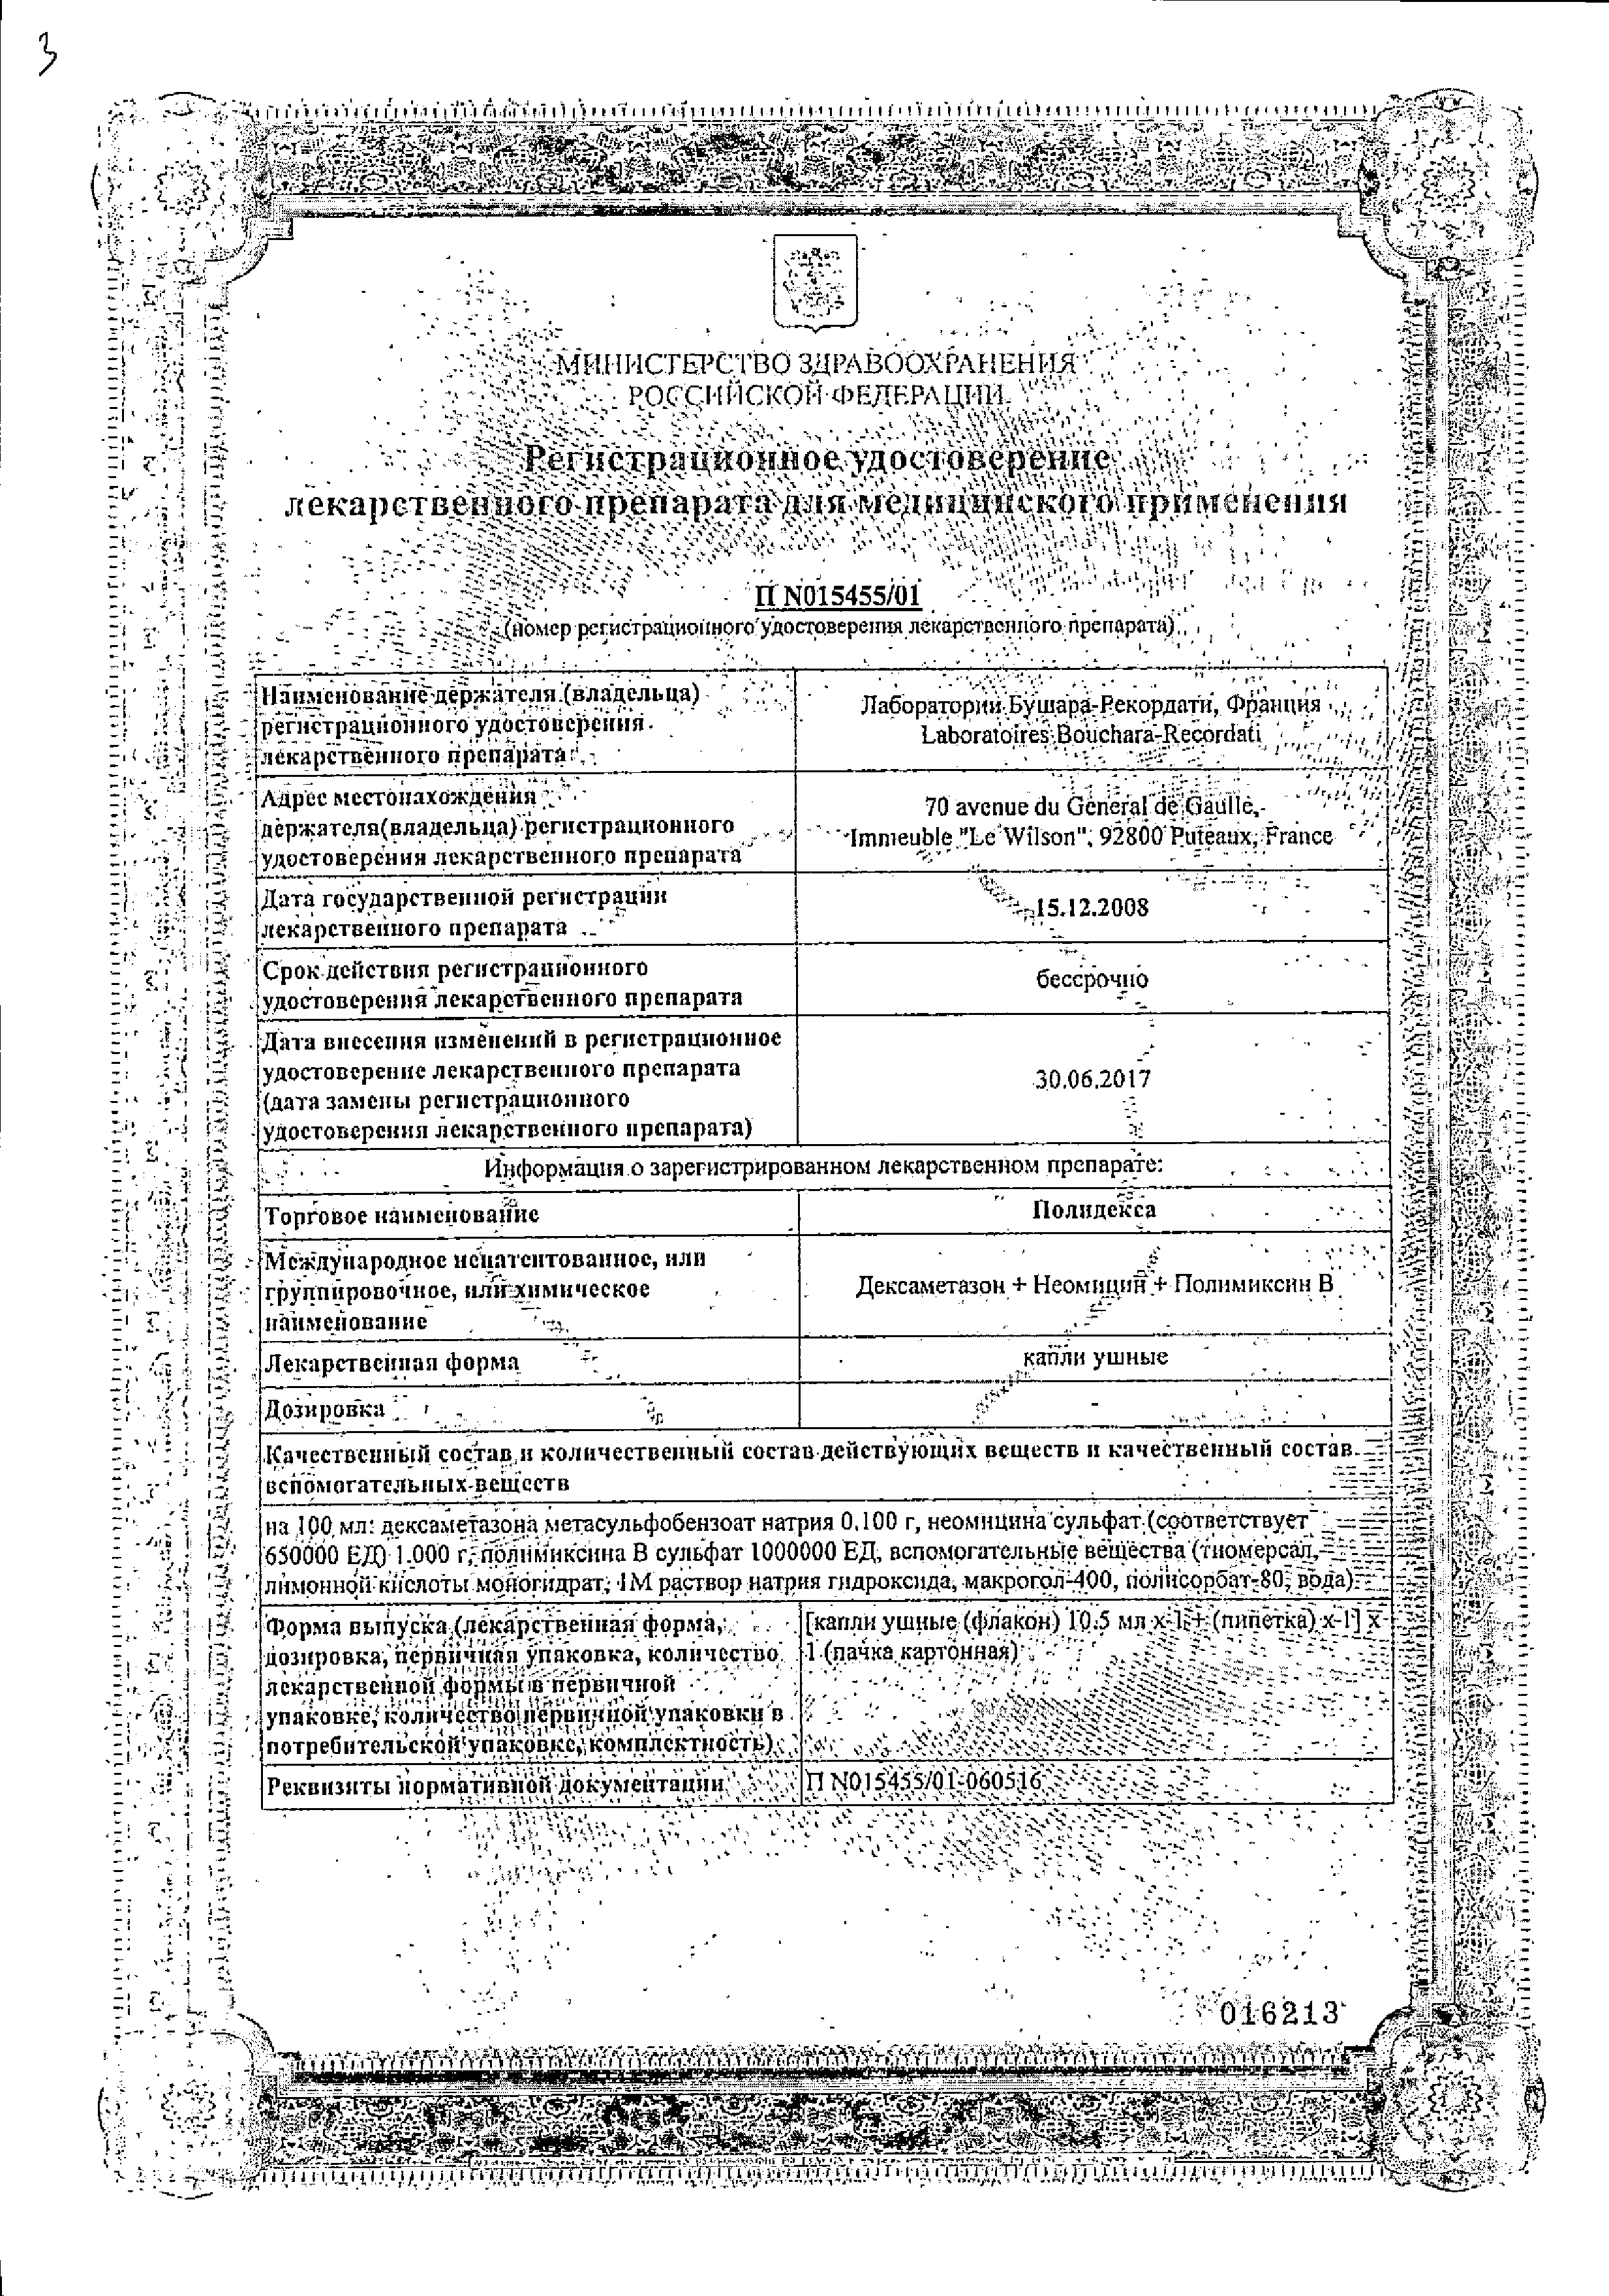 Полидекса сертификат